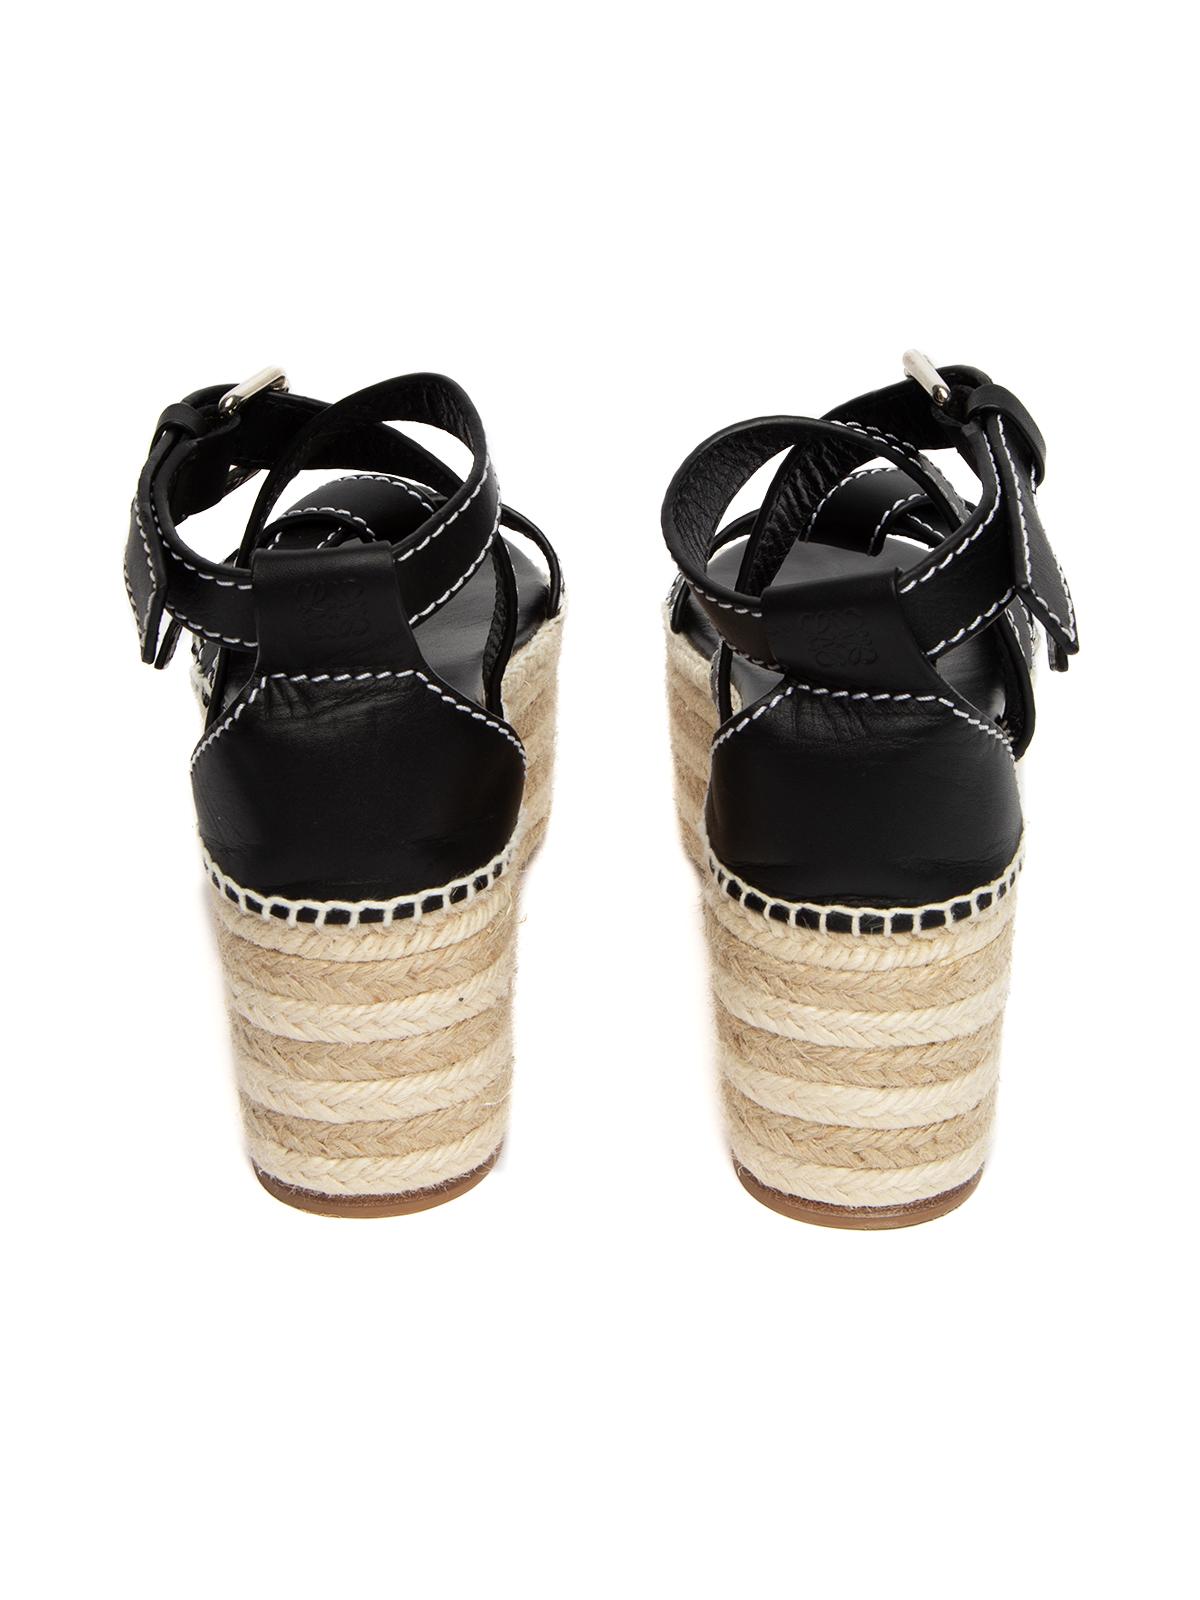 Loewe Women's Platform Espadrilles Sandals 1